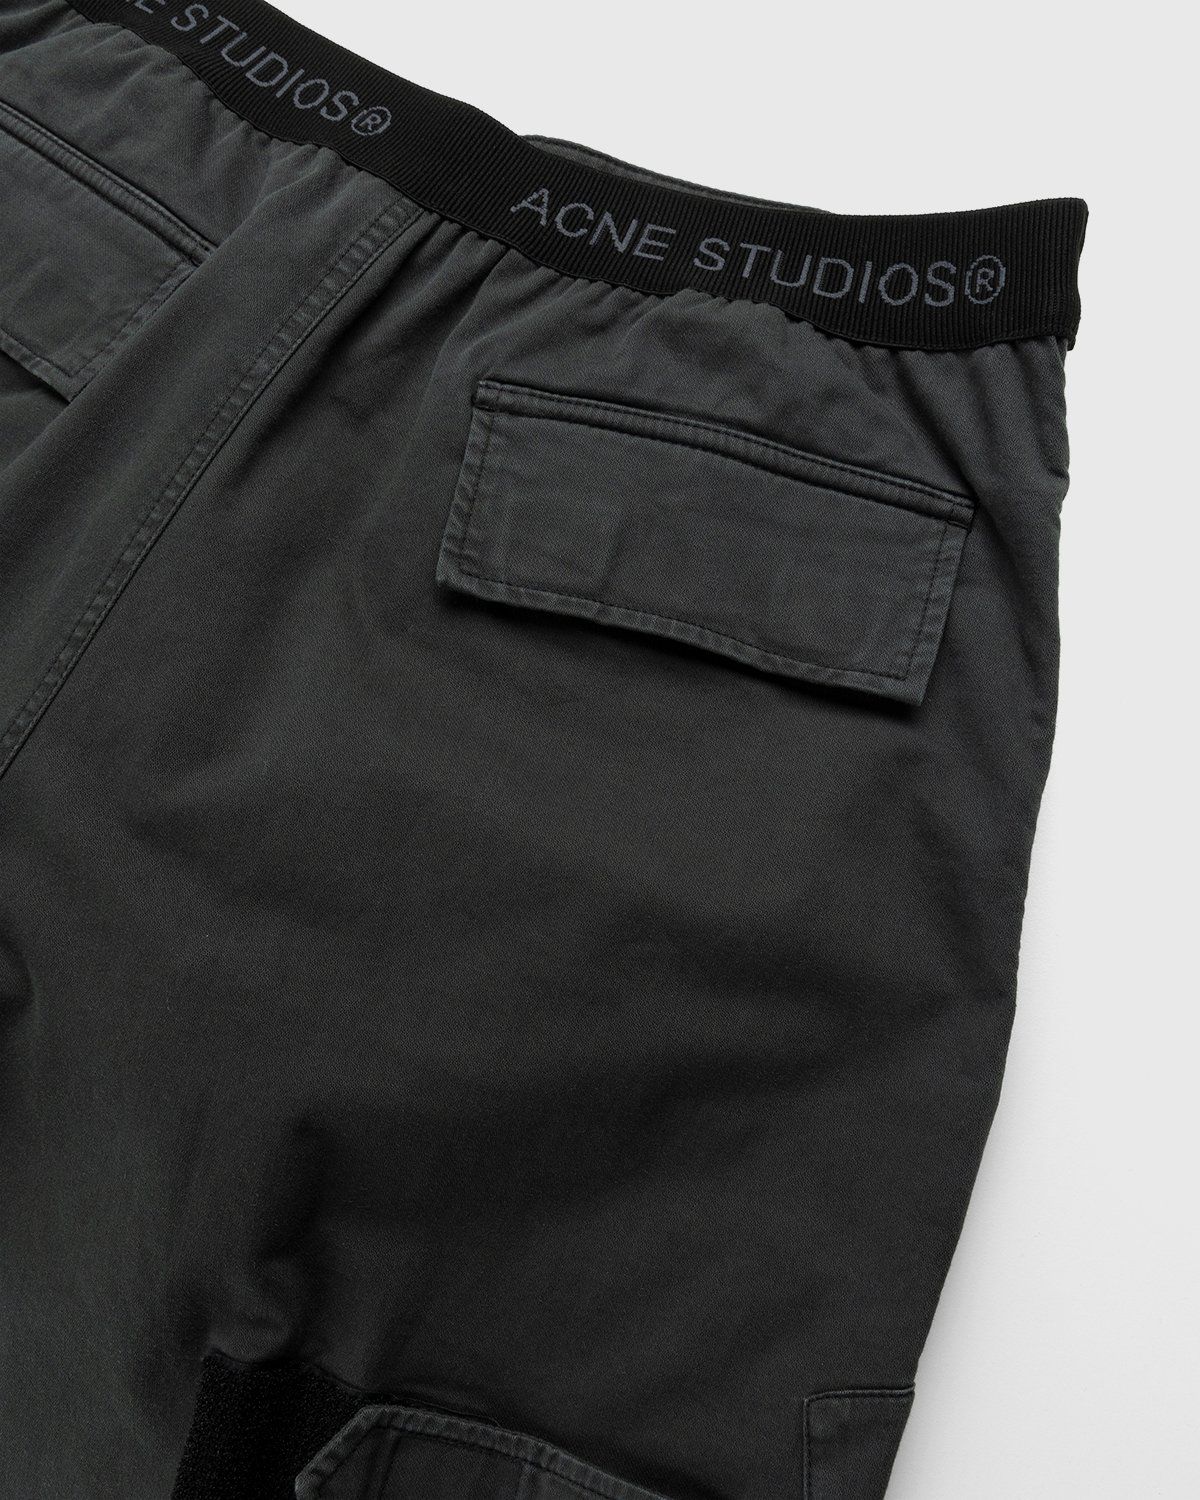 Acne Studios – Chevron Cargo Pants Anthracite Grey - Image 4